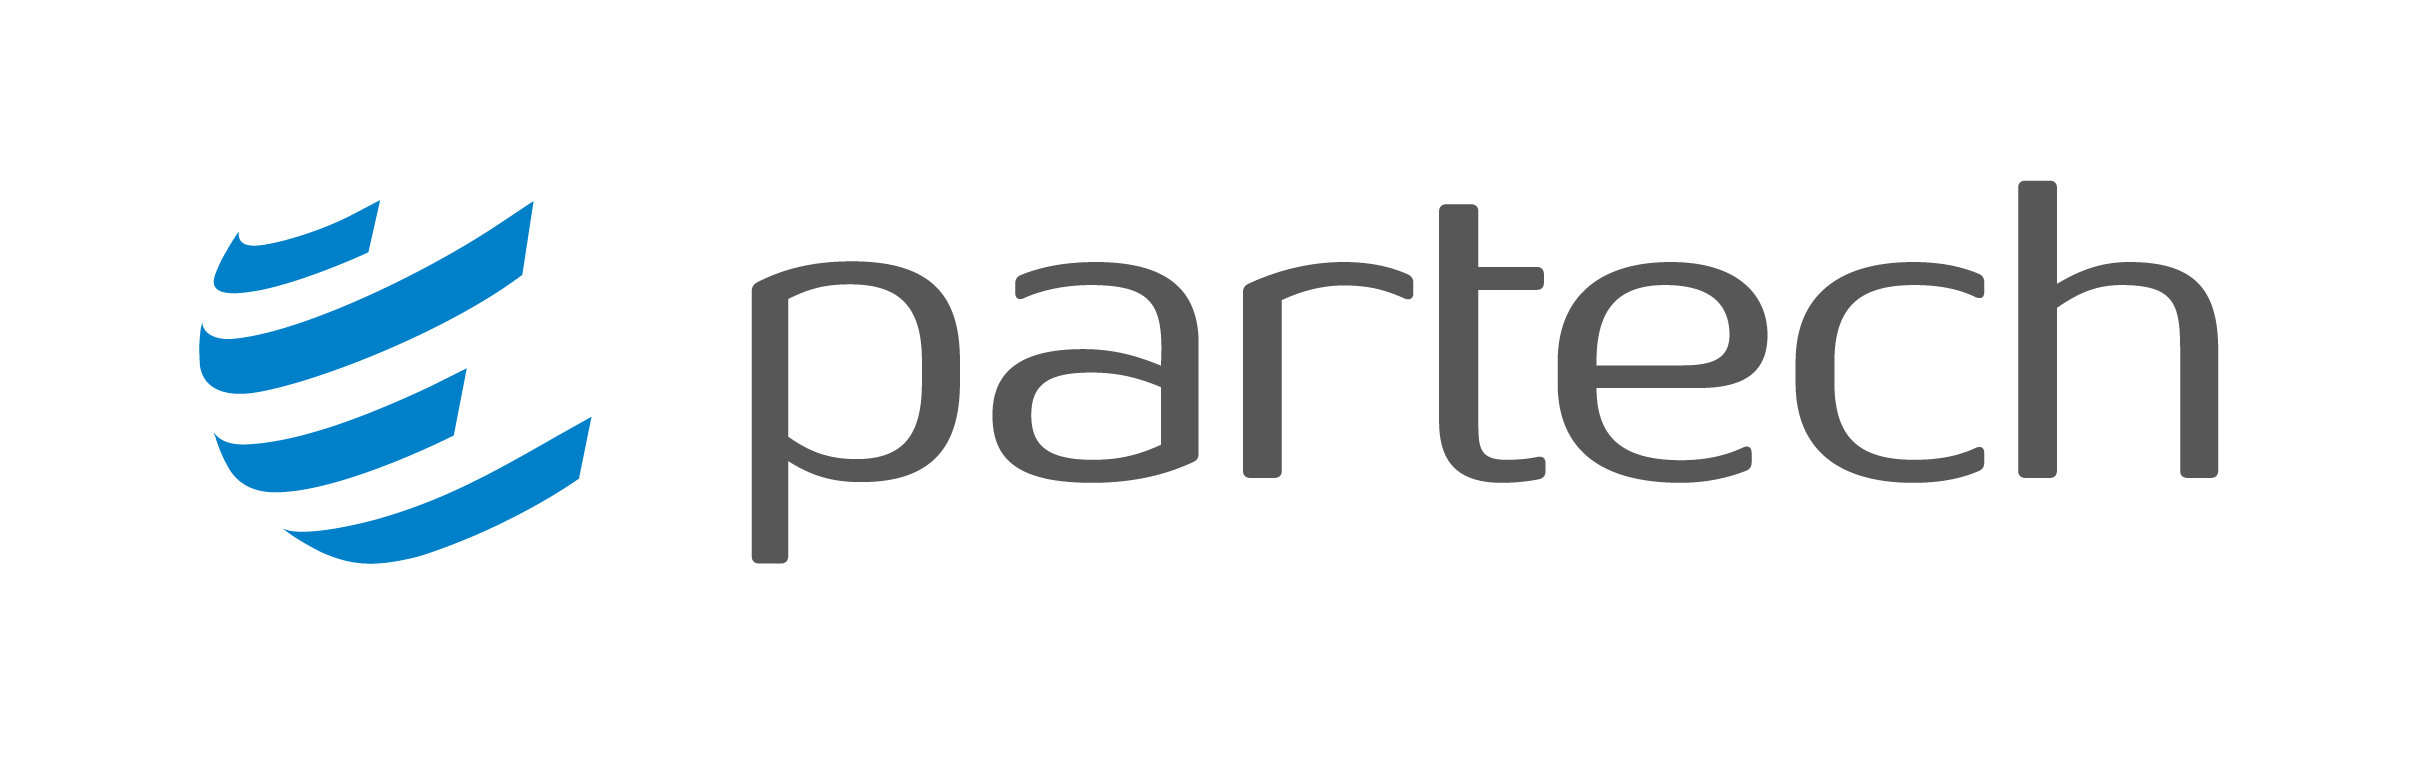 Partech logo